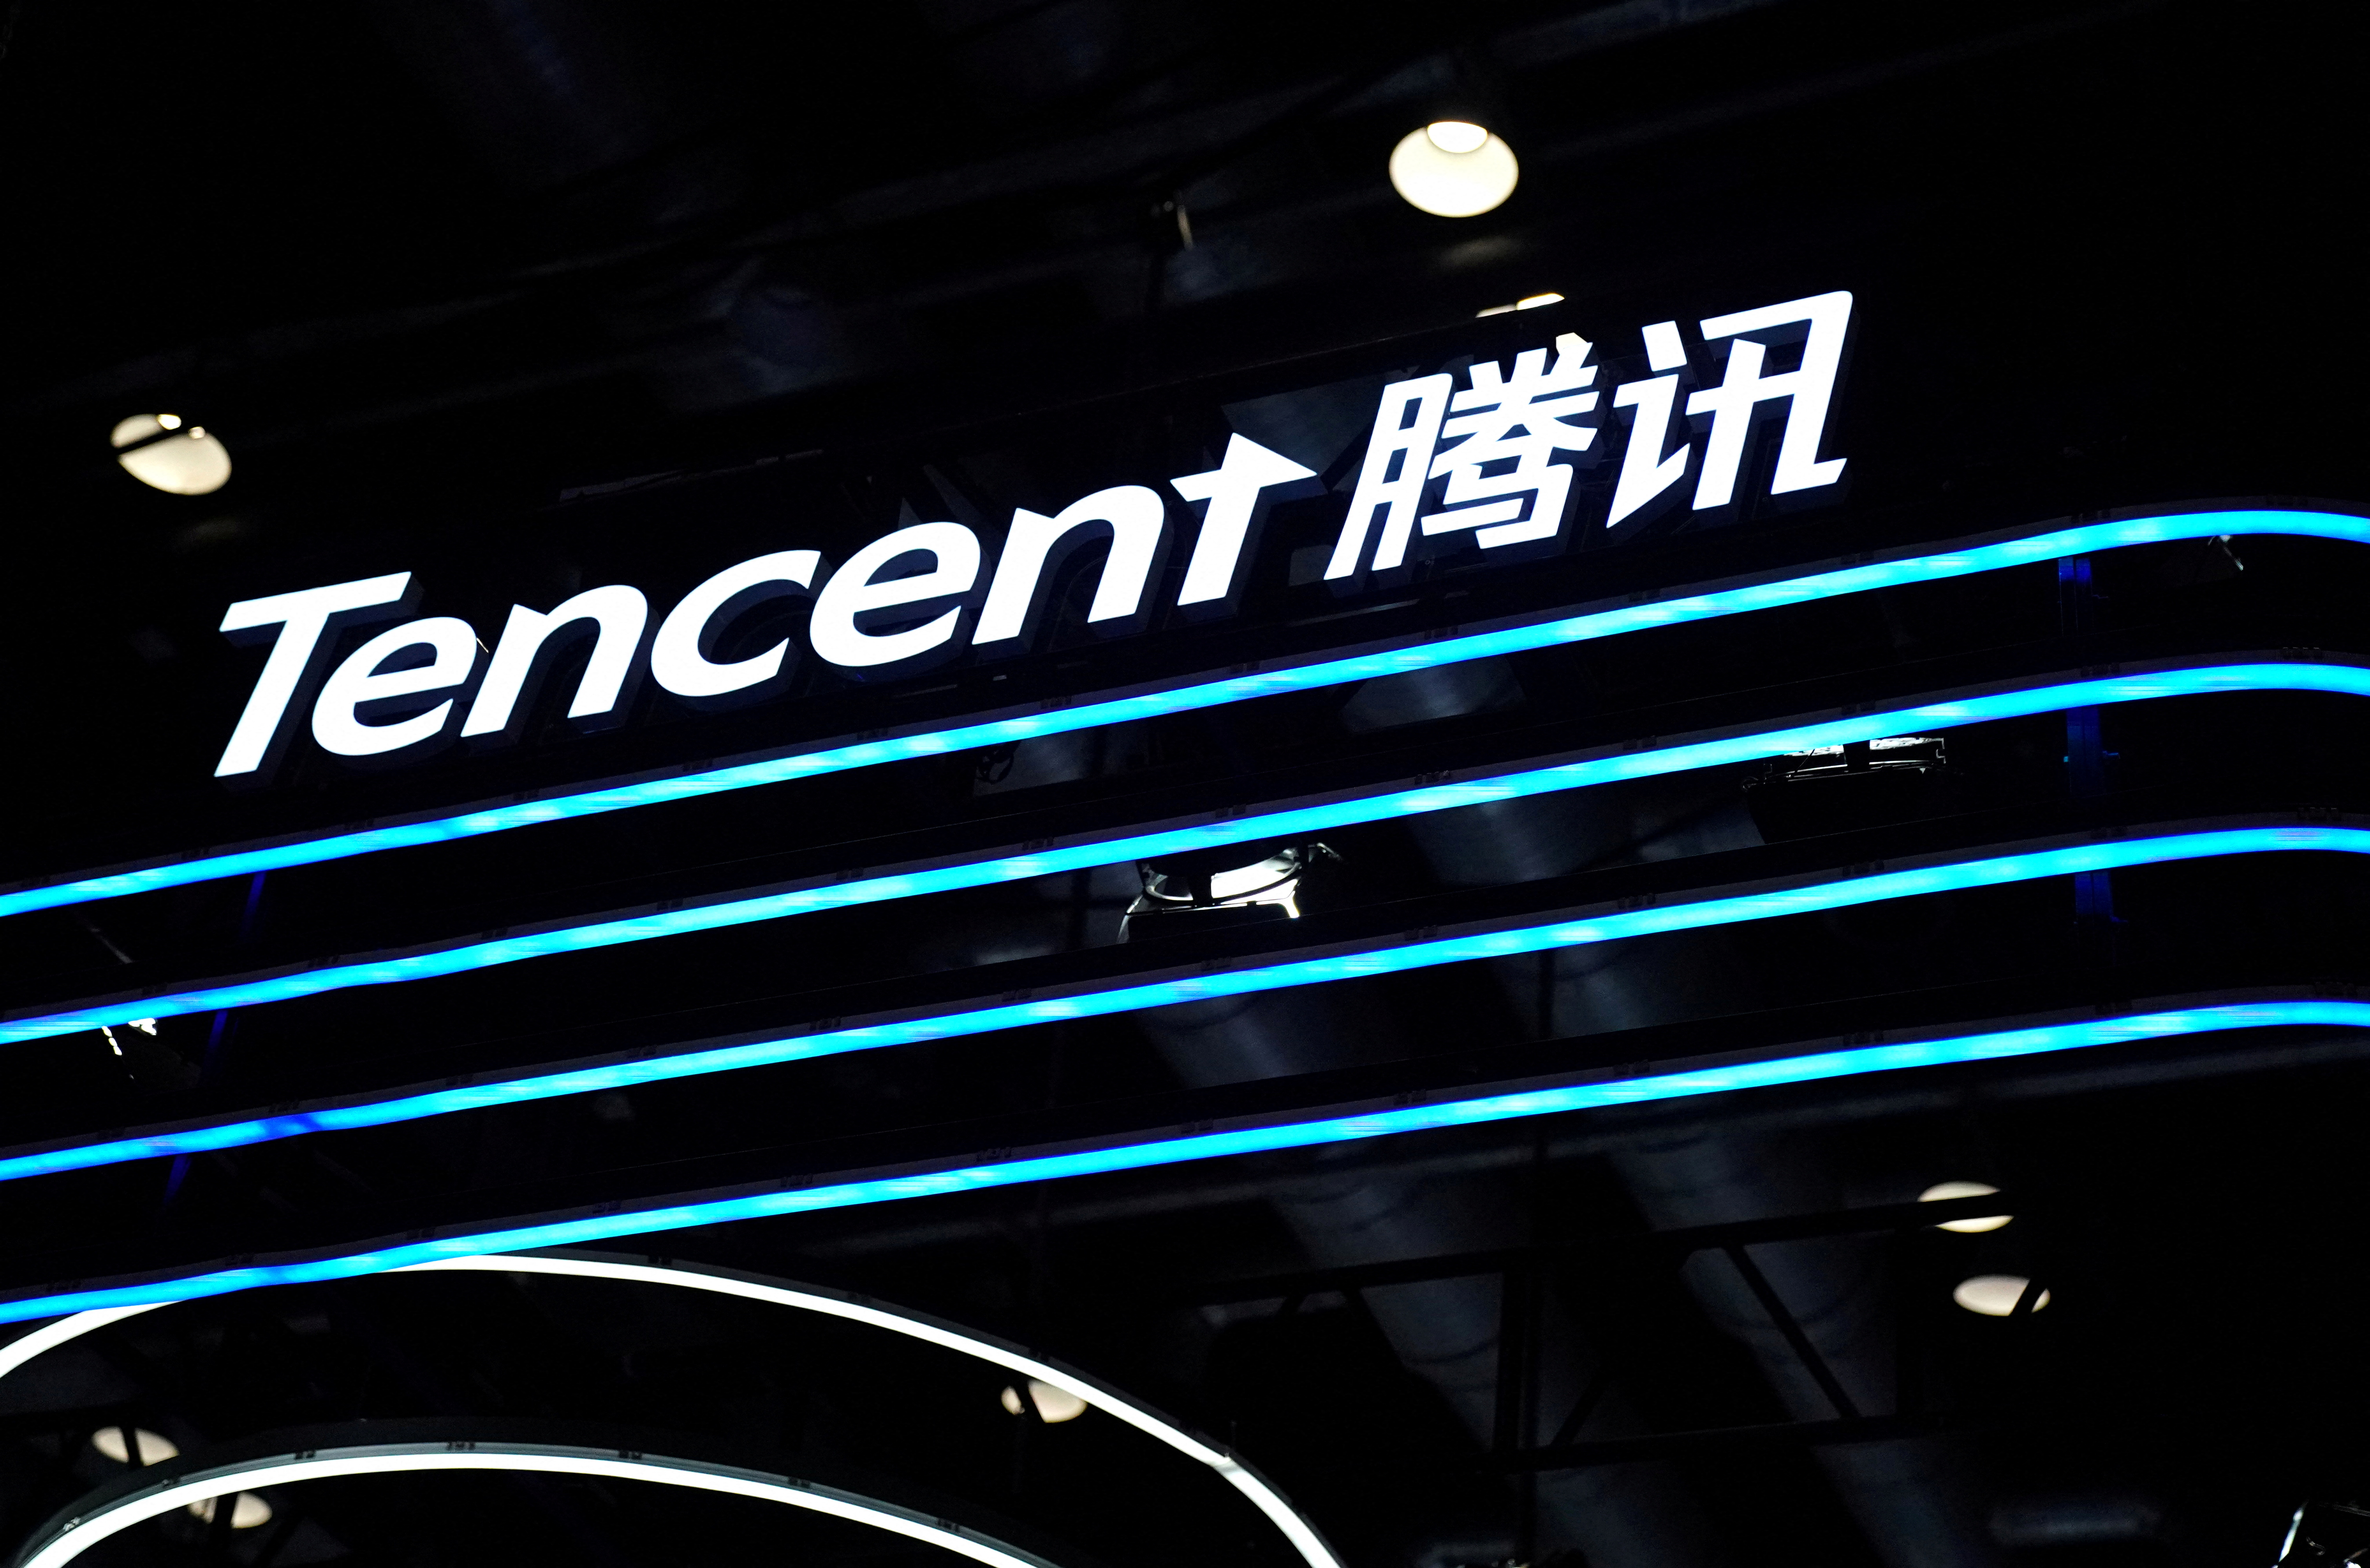 Logo de Tencent